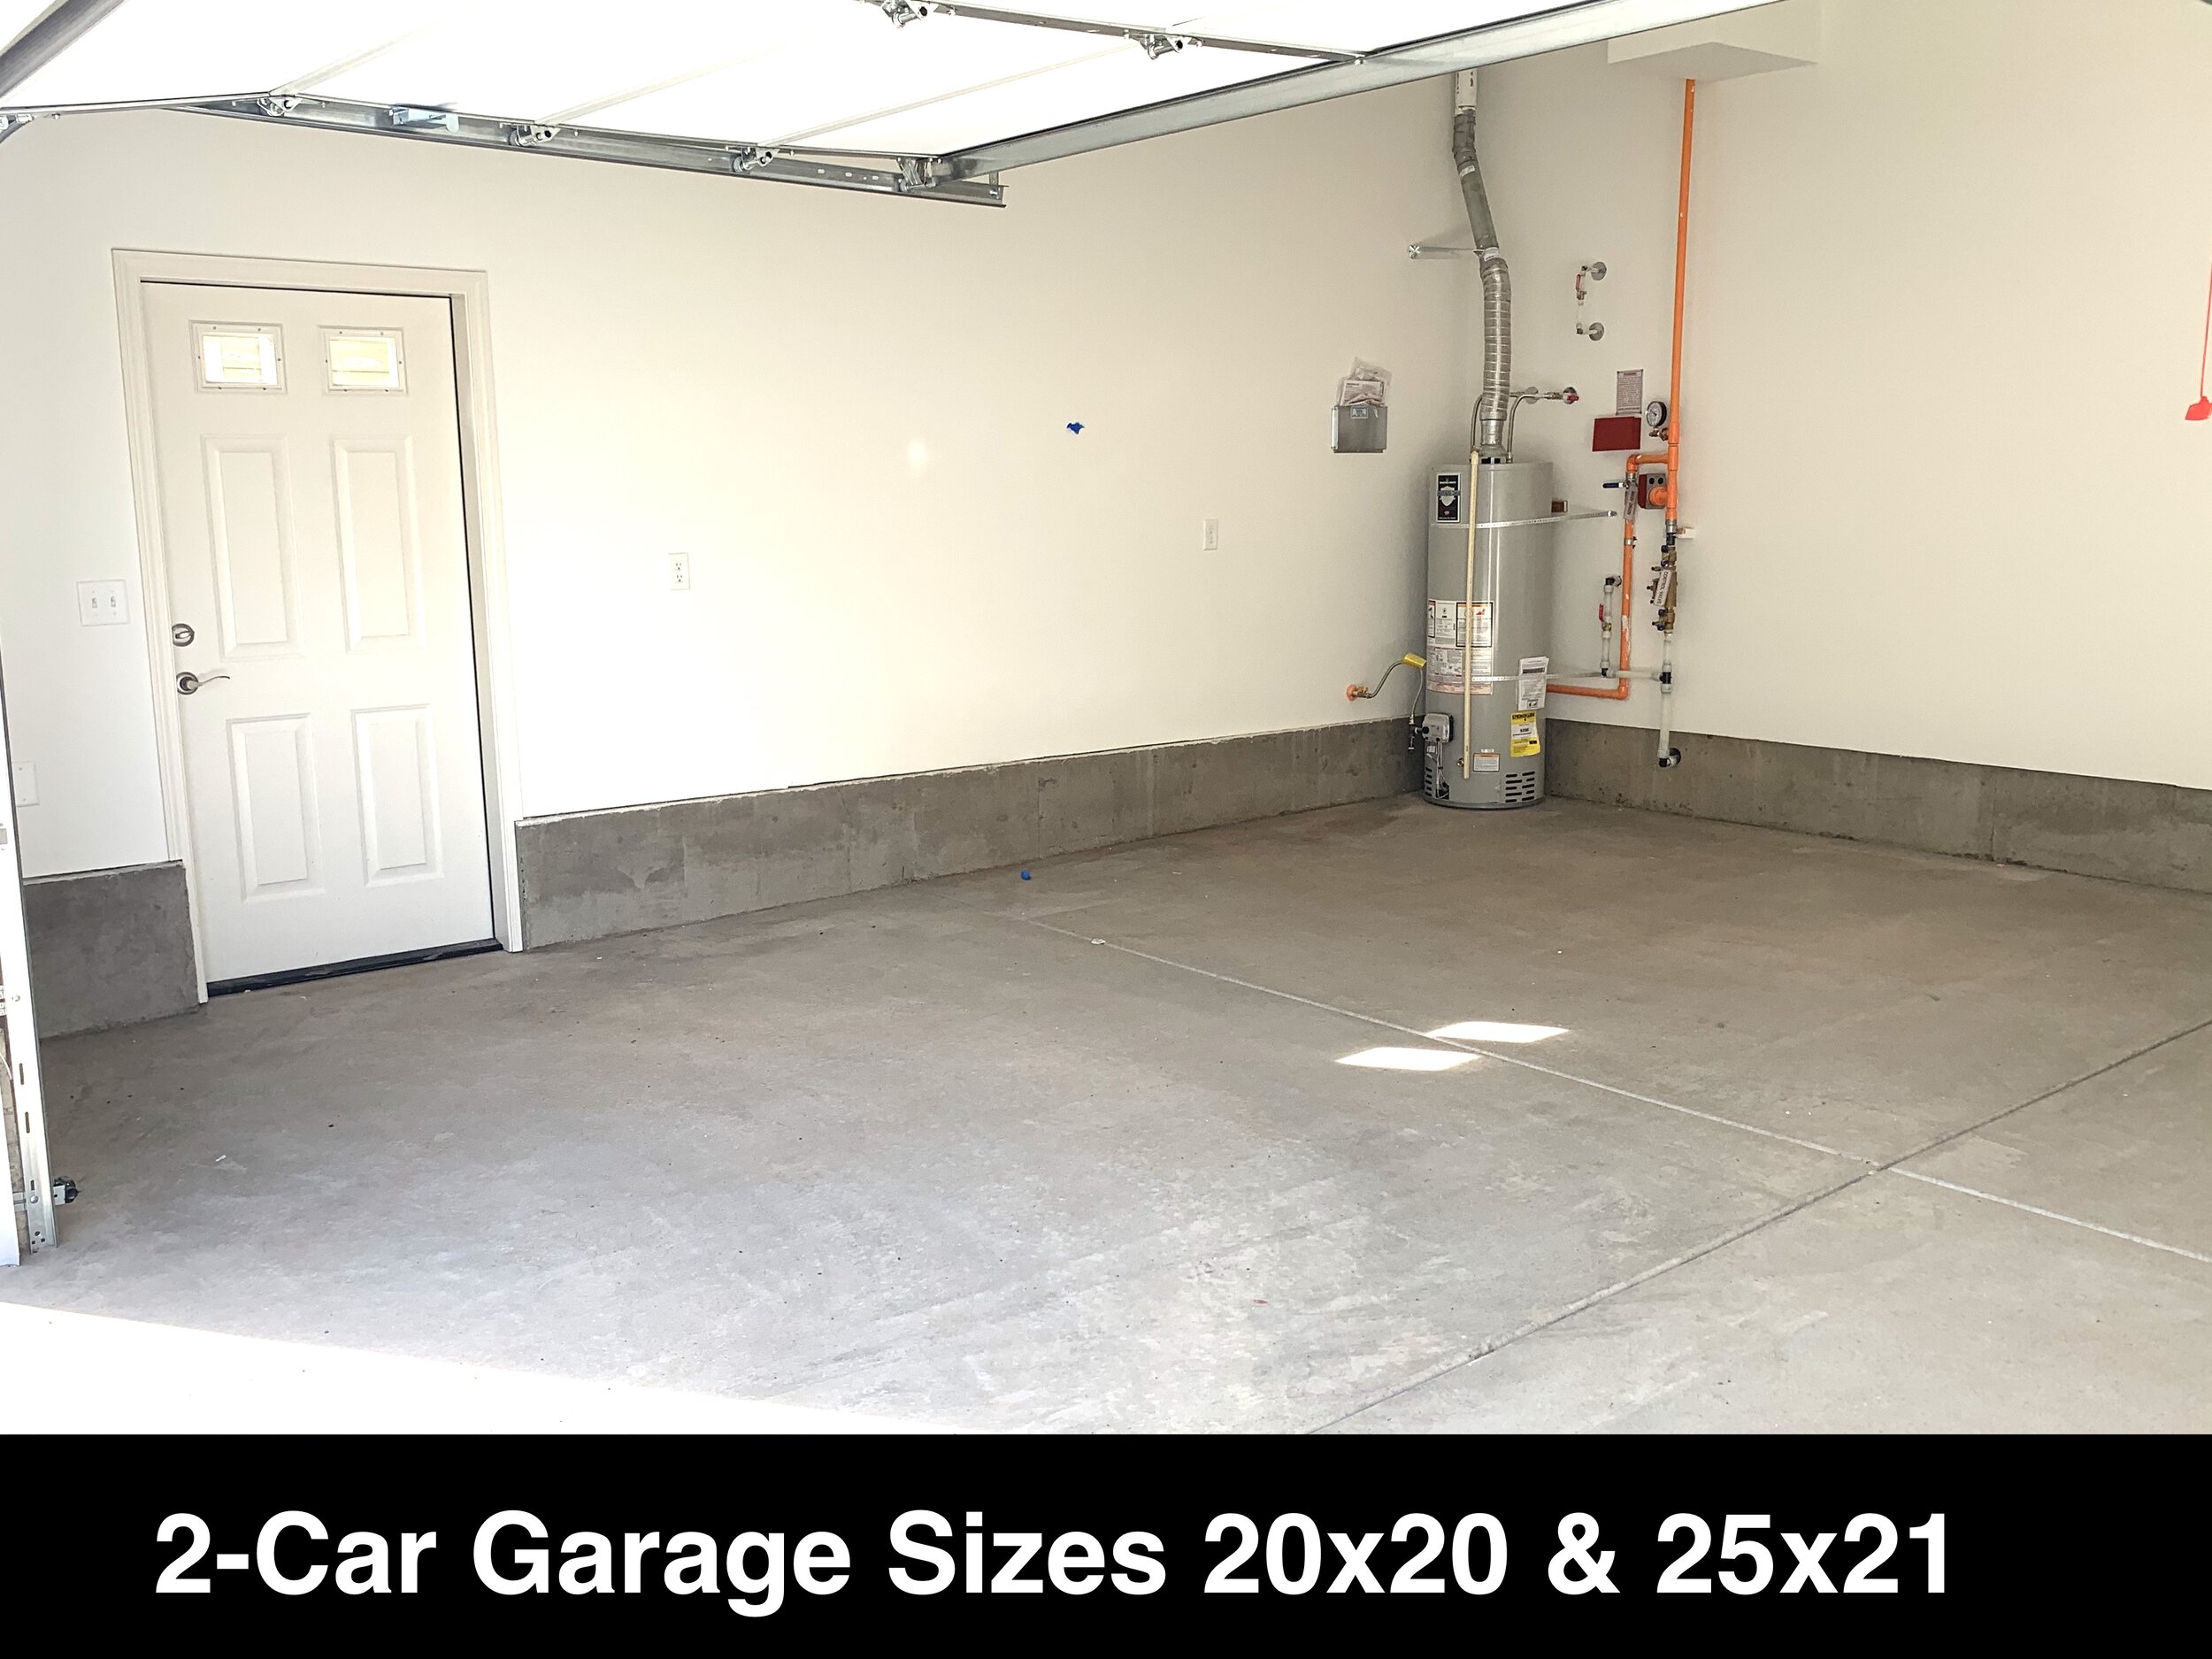 20 - Garage - Unit C.jpg